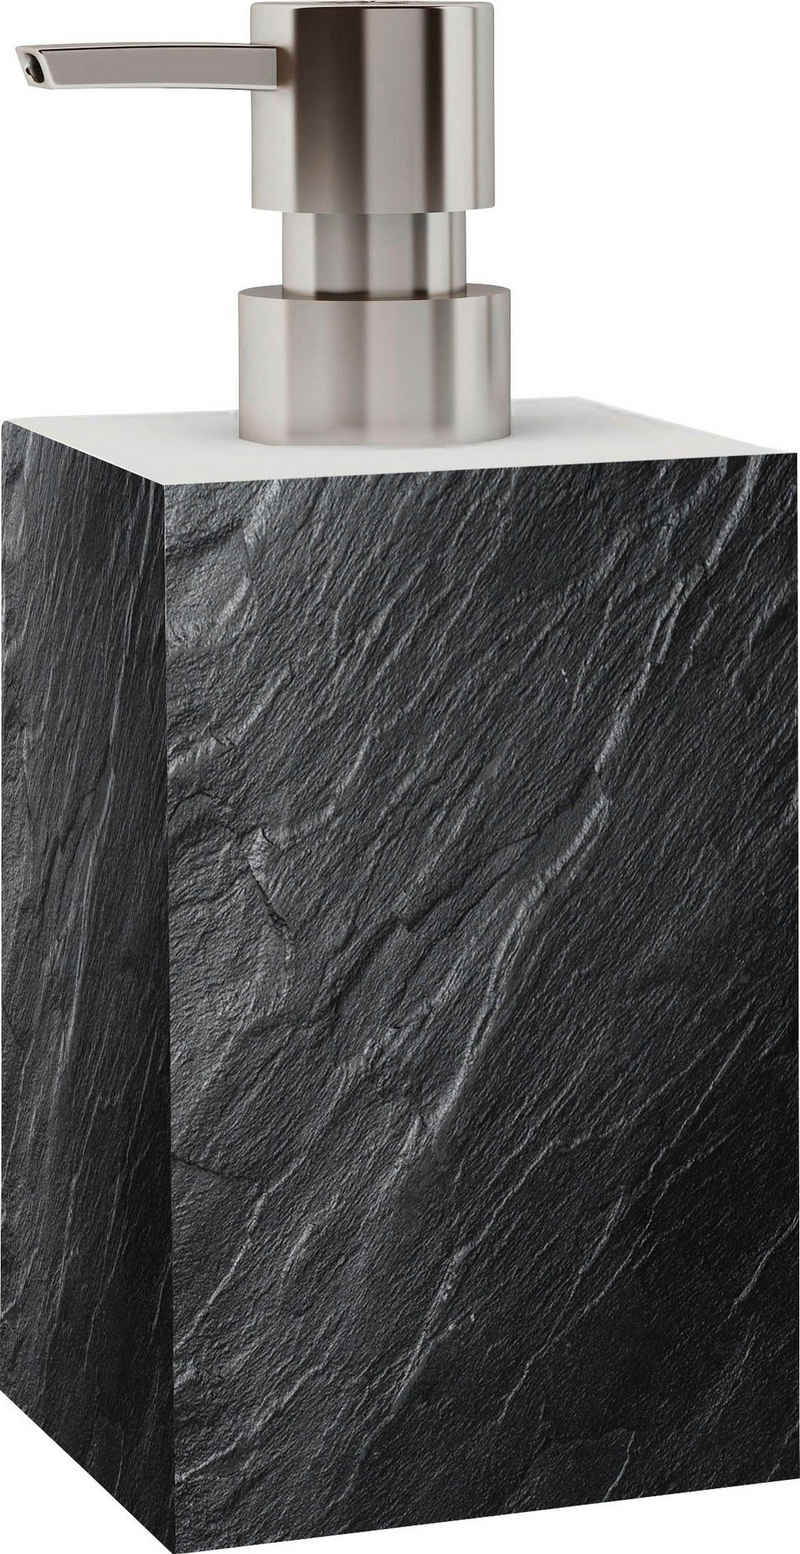 Sanilo Seifenspender Granit, leicht nachfüllbar